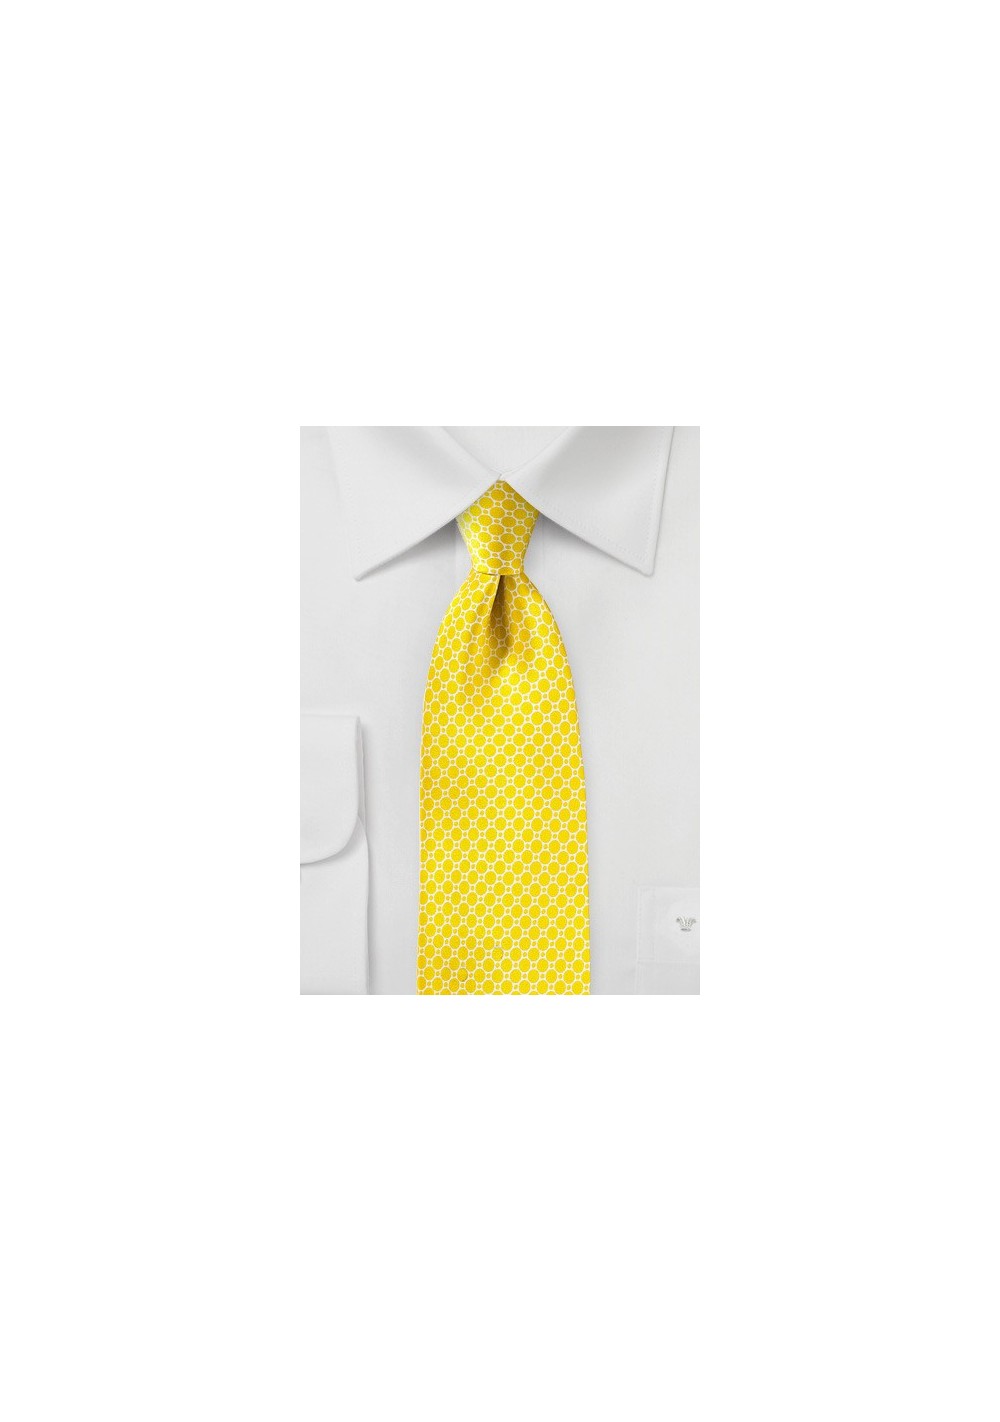 Sunbeam Yellow Silk Tie